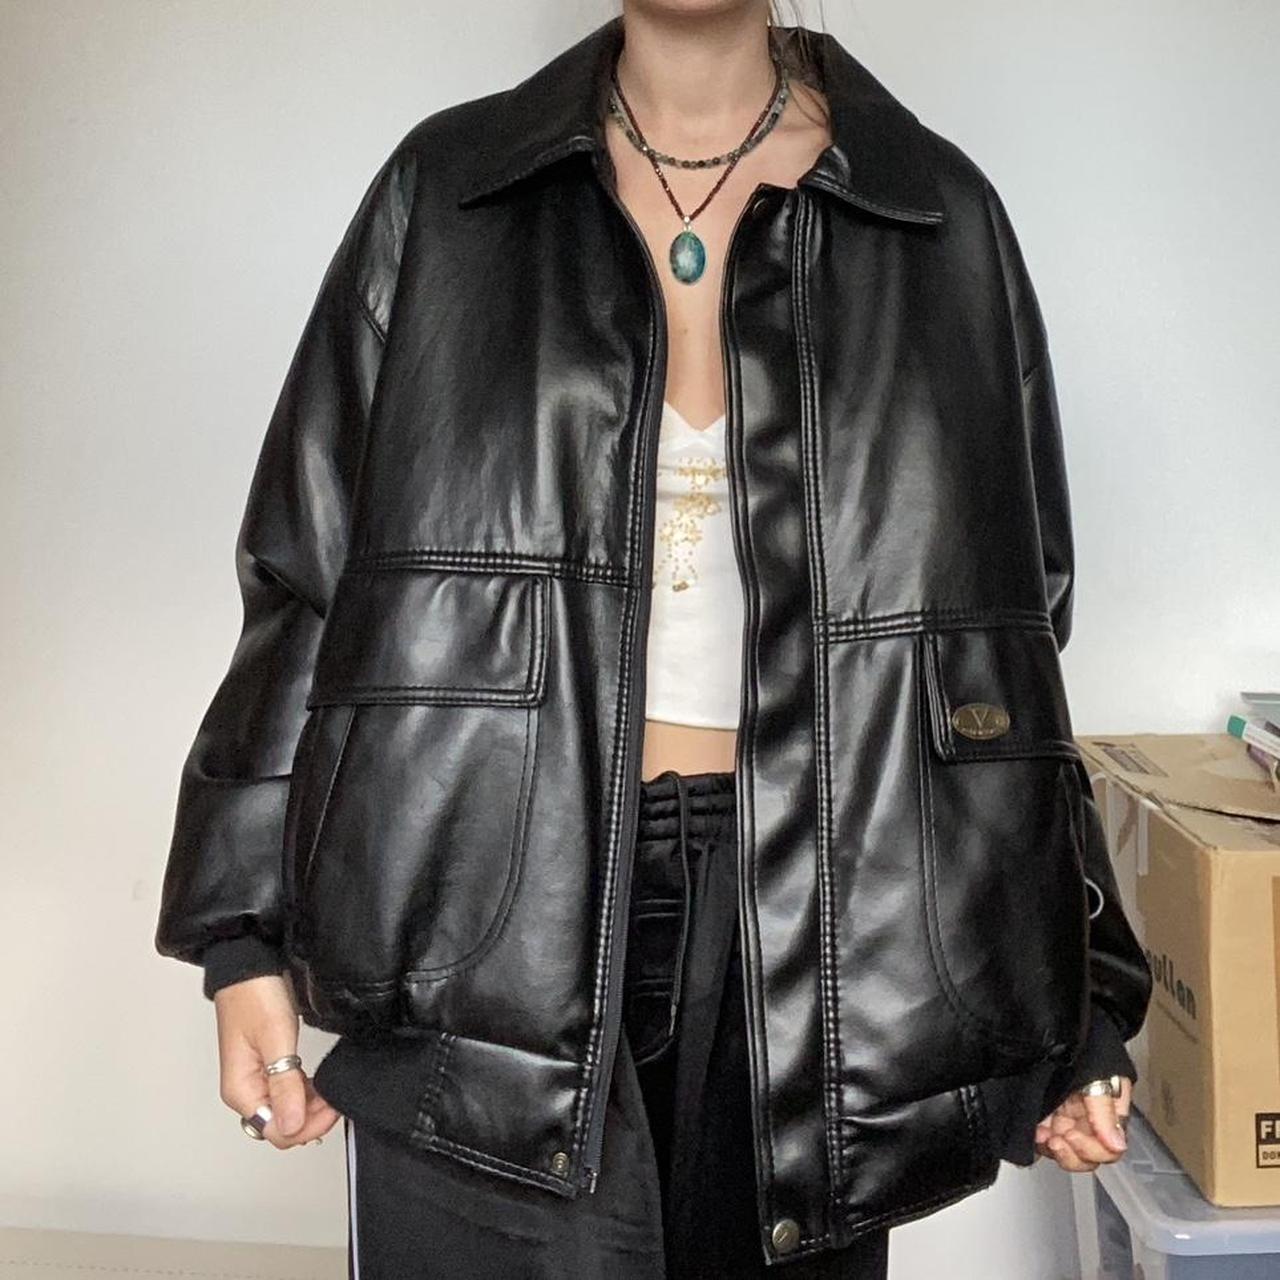 Vintage 90s black leather jacket Model is... - Depop